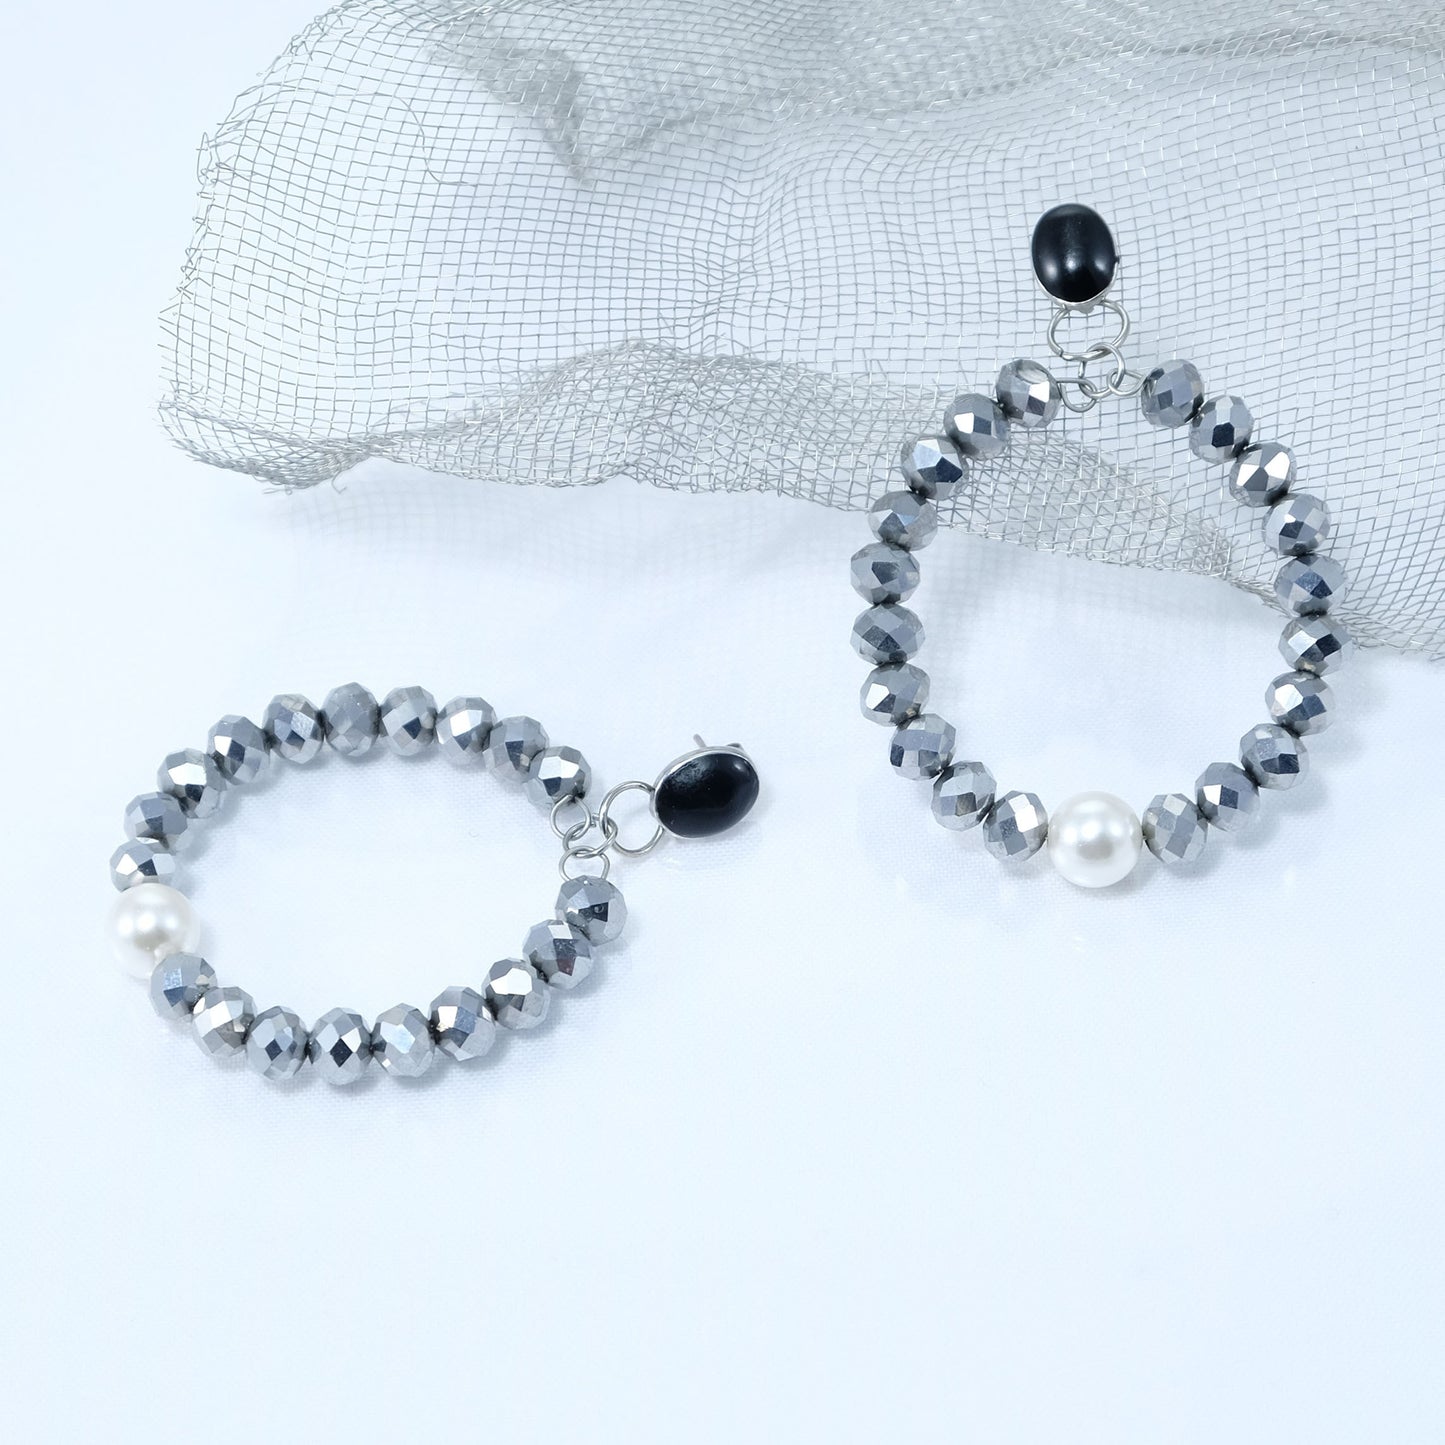 Orecchini I CRISTALLI .033 cerchio di mezzi cristalli colore argento monachella smalto nero e perla centrale.